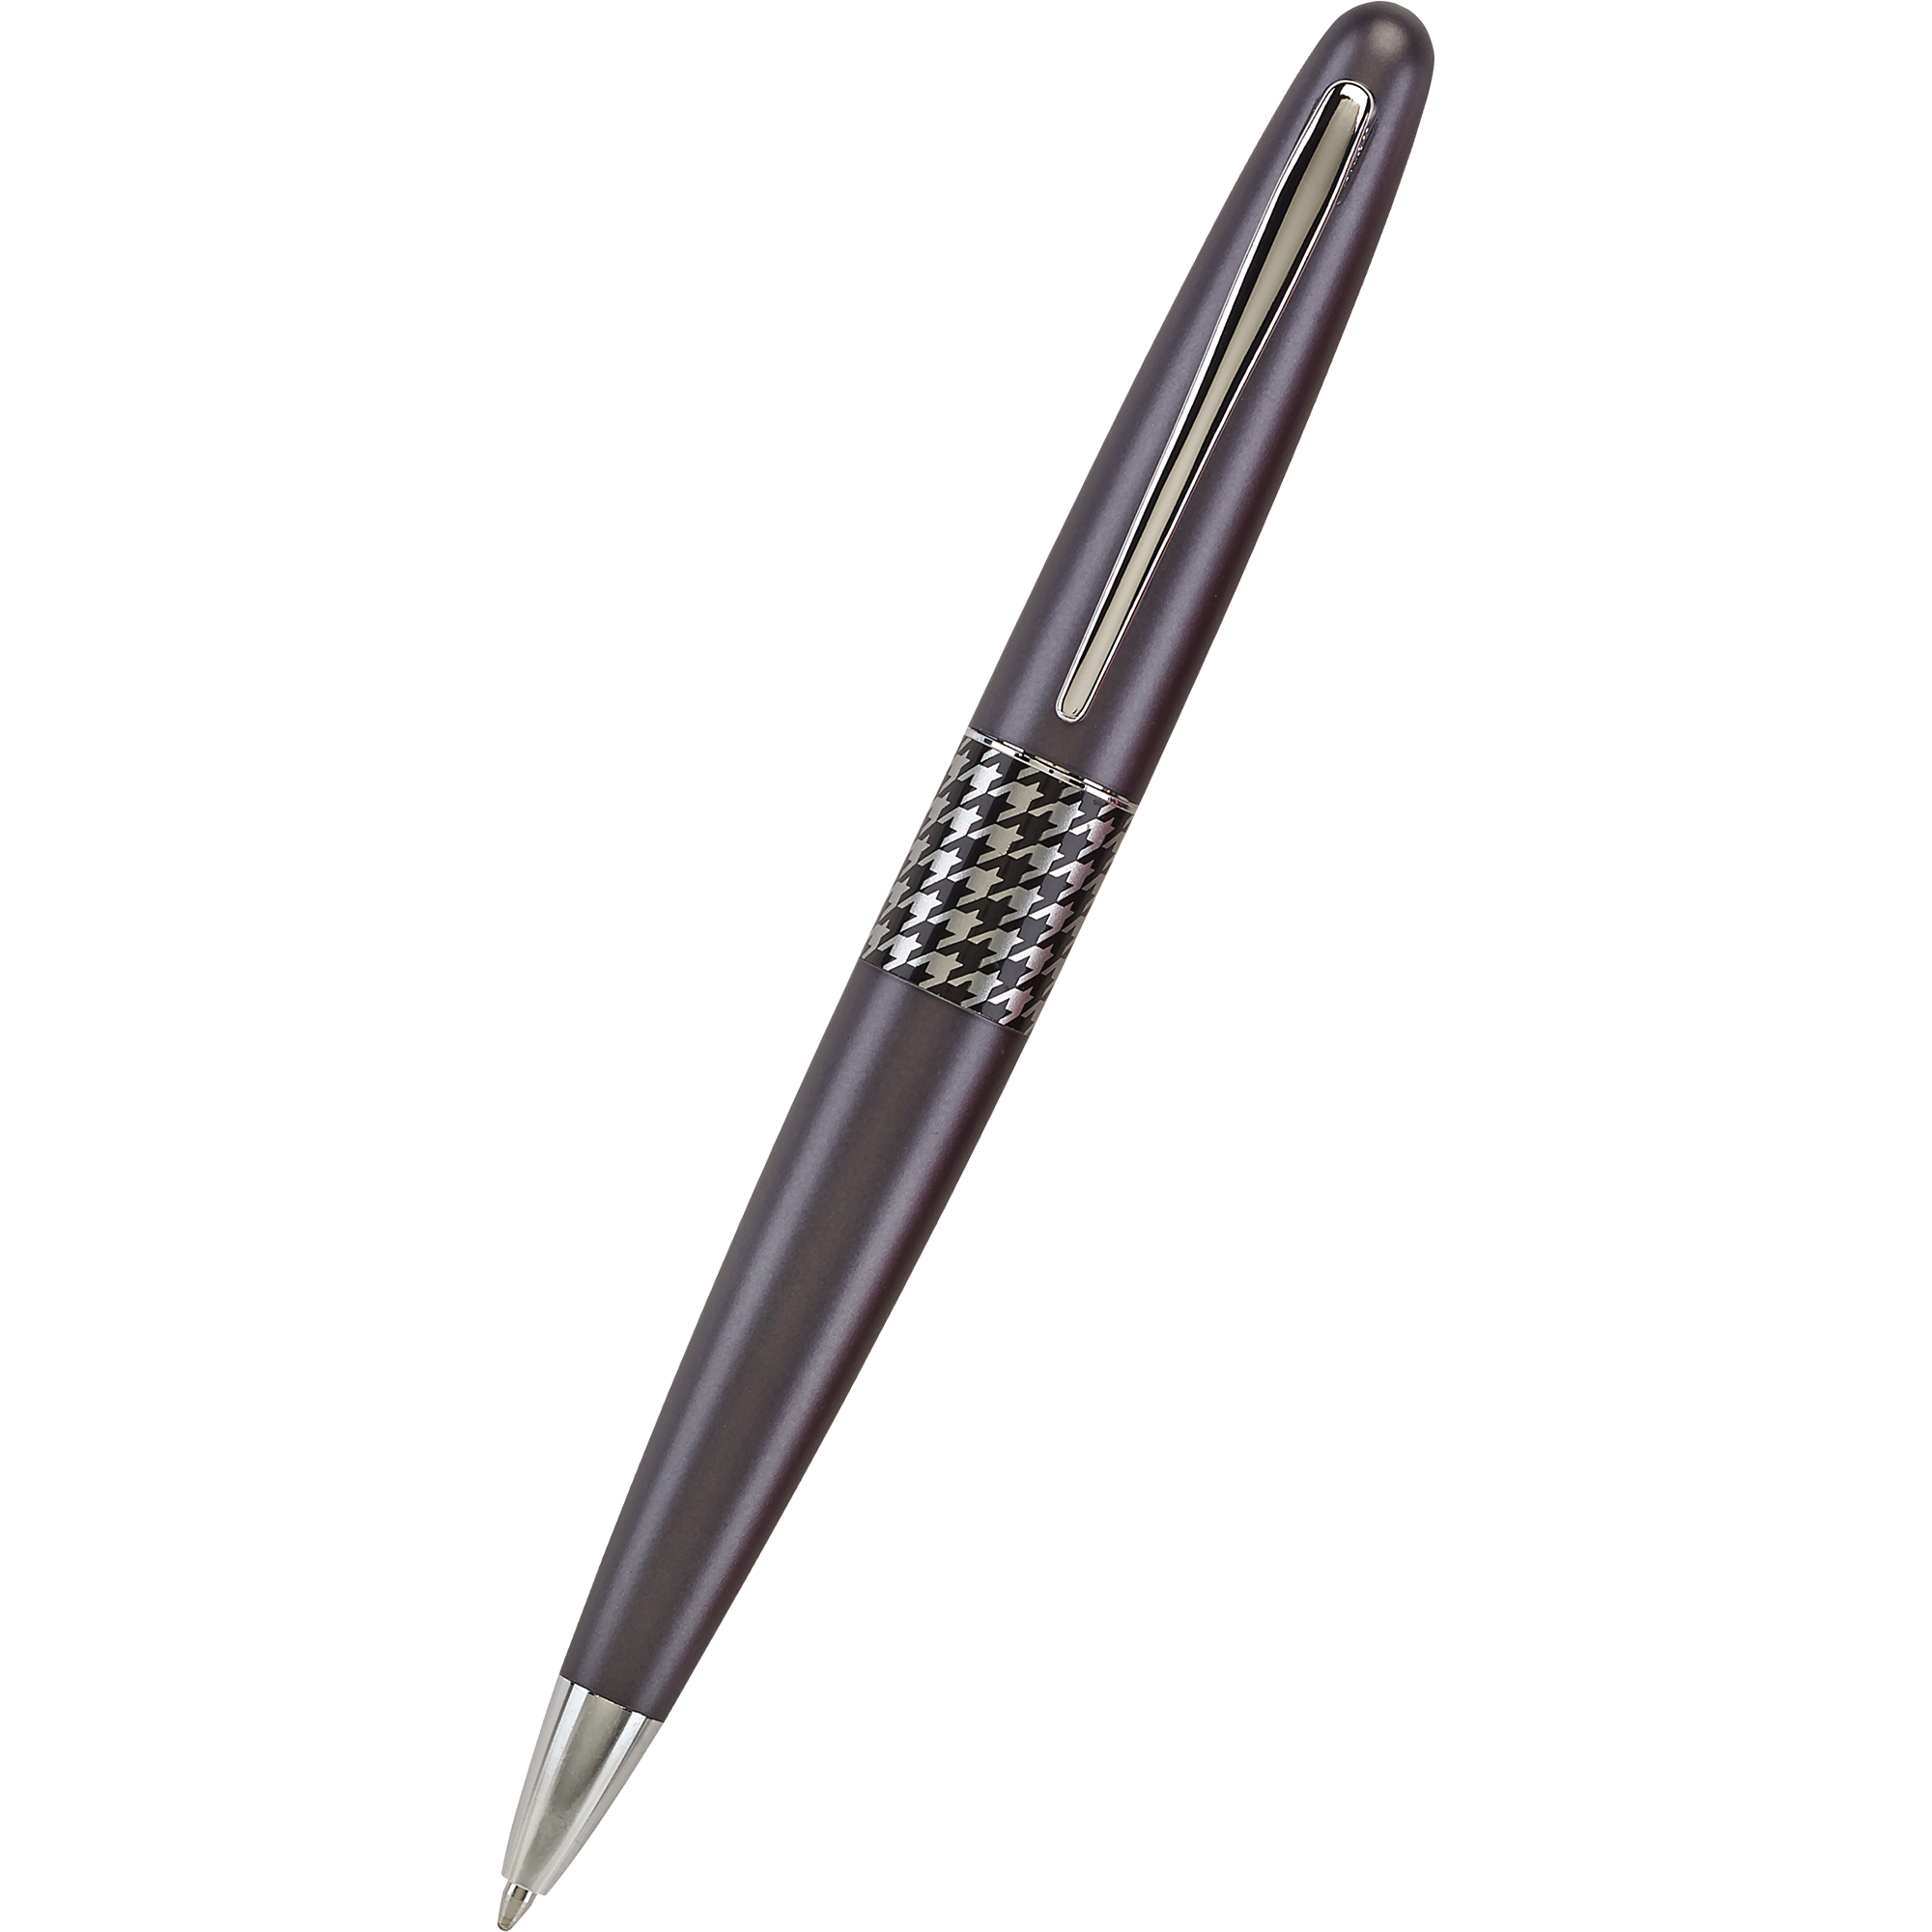 https://www.penboutique.com/cdn/shop/products/Pilot-Ballpoint-Pen---MR-Collection---Retro-Pop---Gray-1.png?v=1601800411